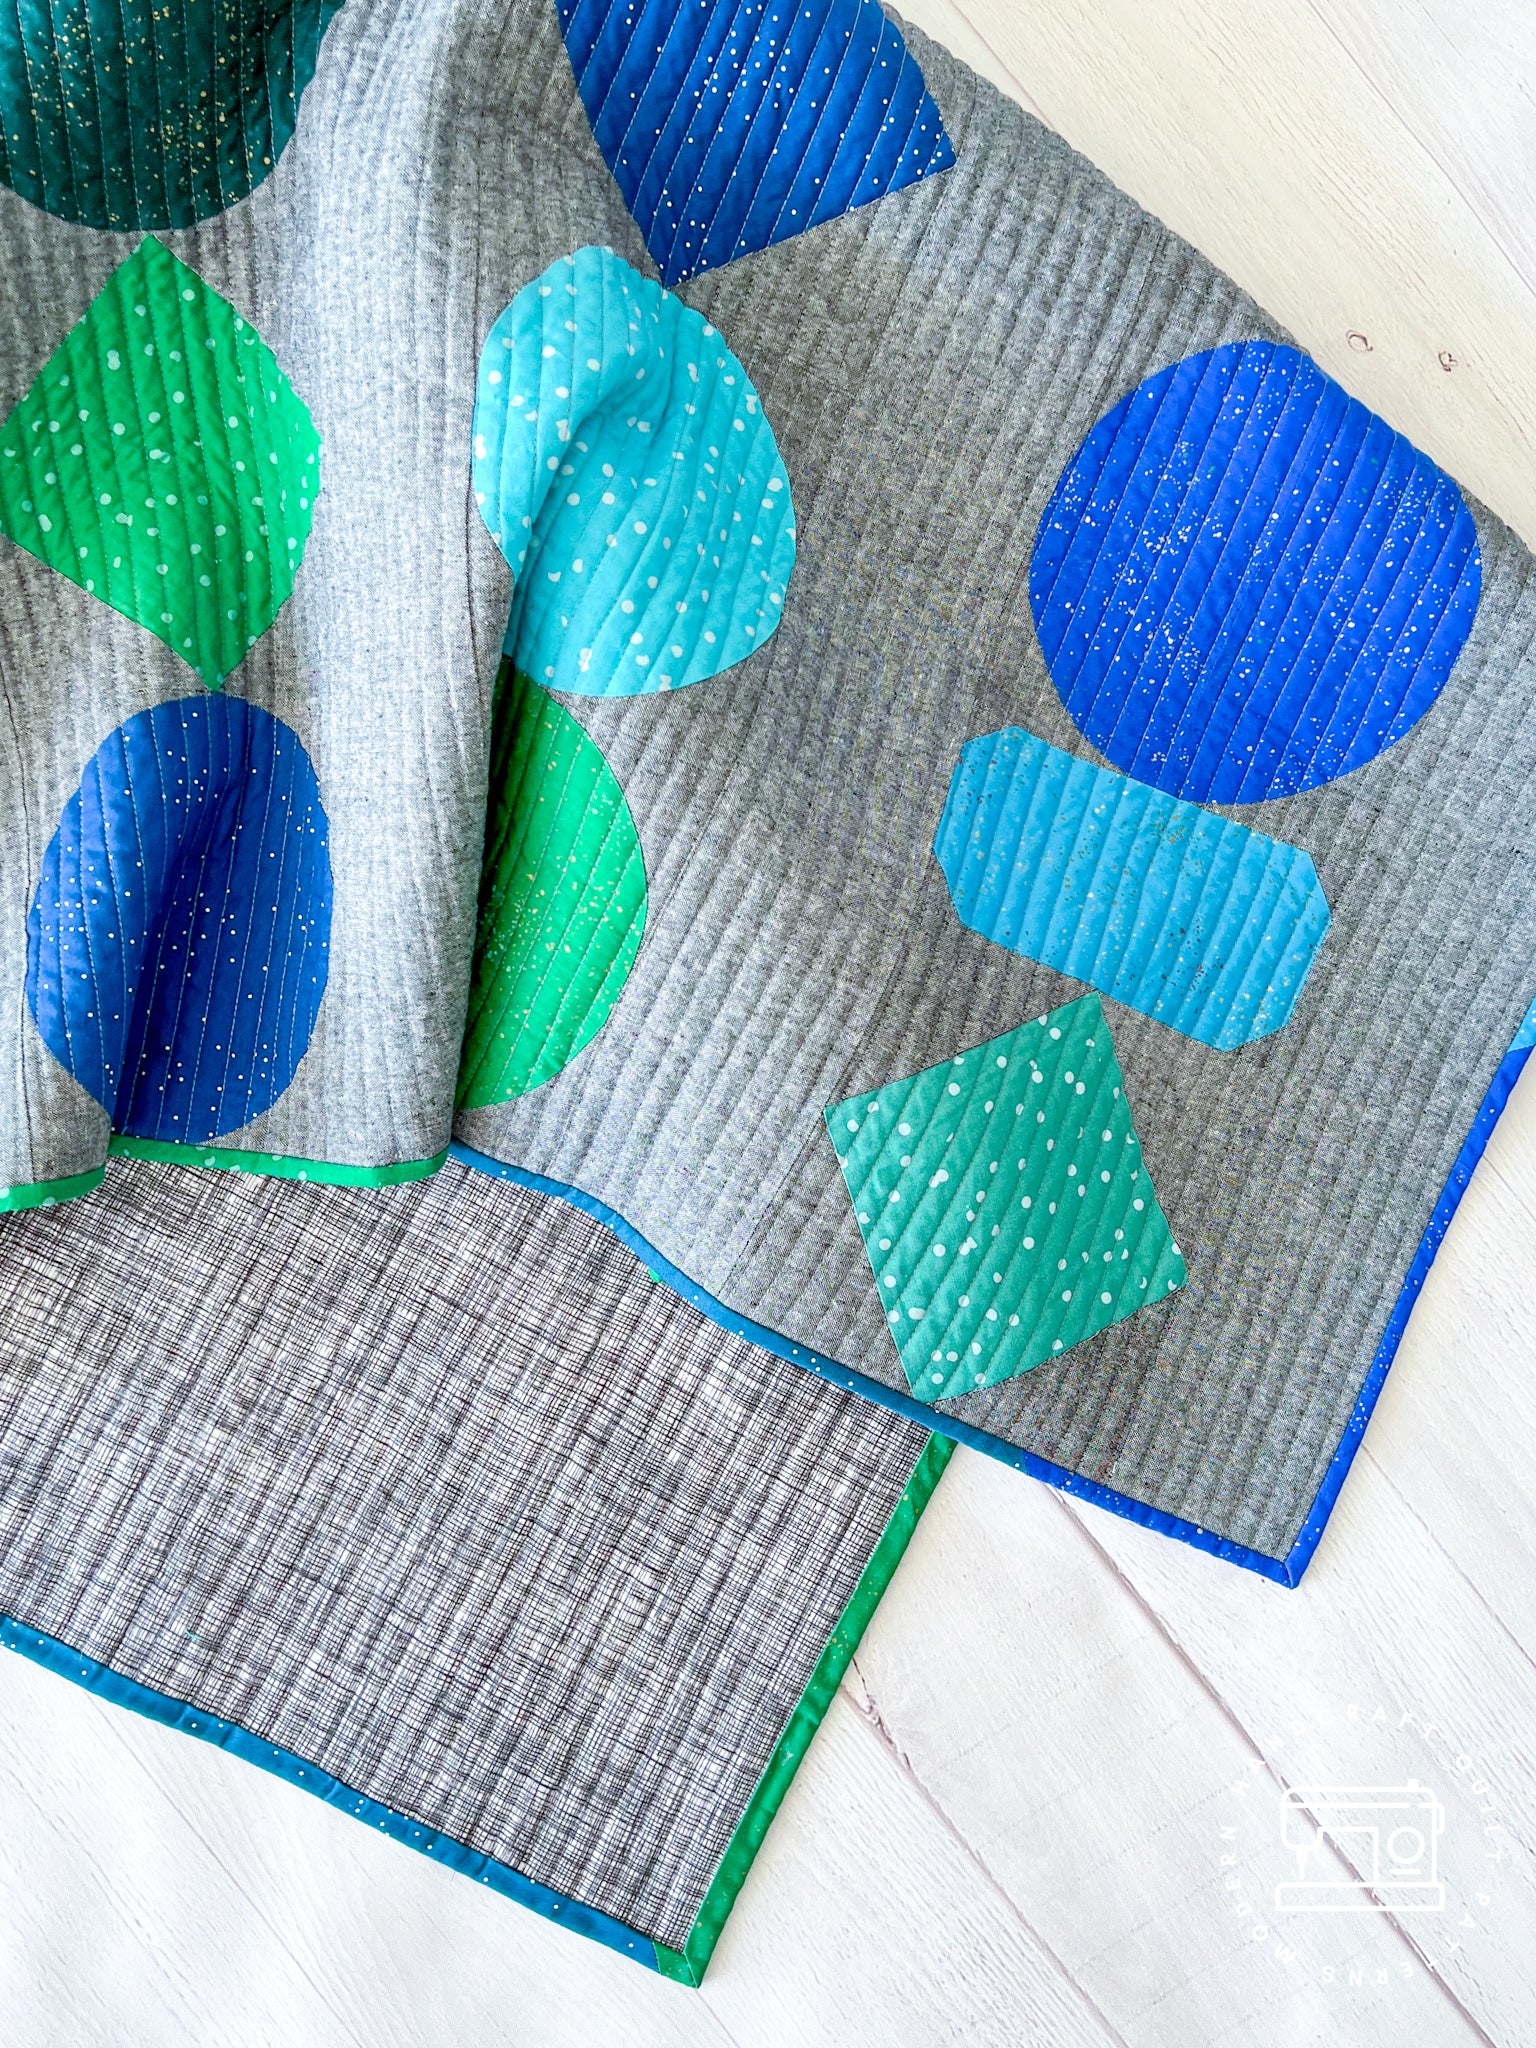 Beads Quilt / Blue + Green Essex Version - Modernhandcraft.com